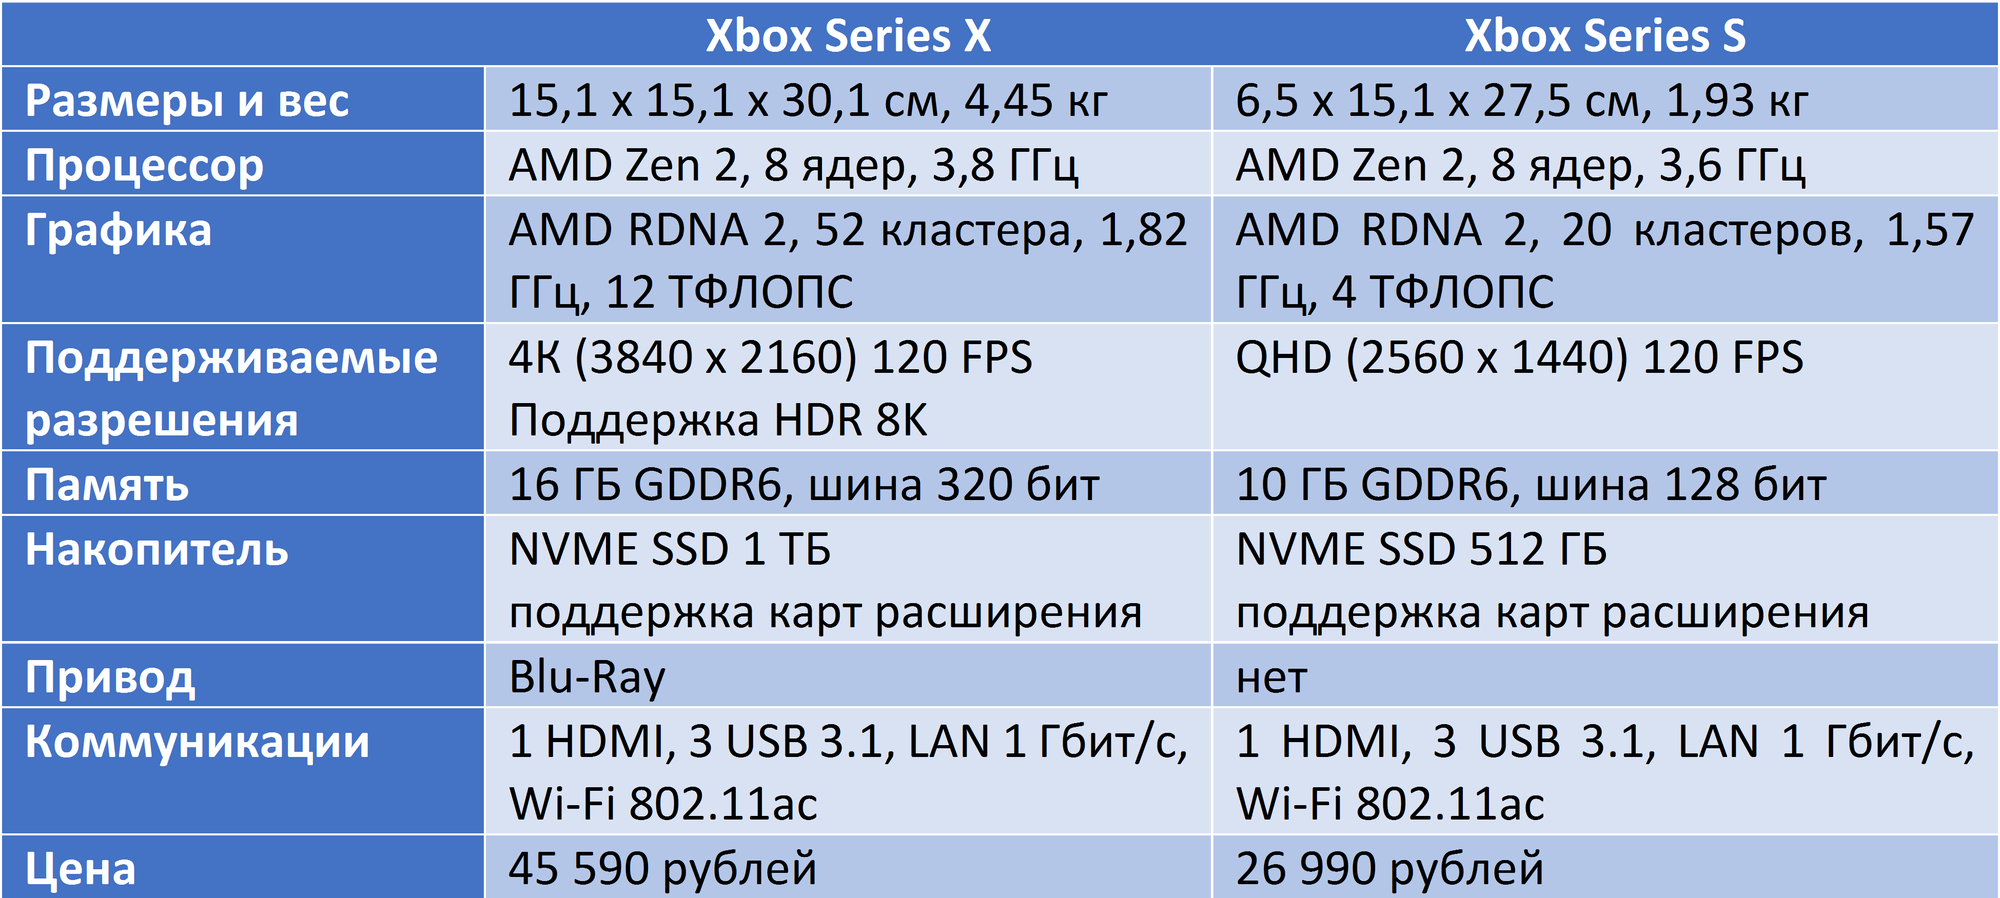 Series s series x сравнение. Xbox one x характеристики железа. Xbox Series 1s характеристики. Сравнение характеристик Xbox. Характеристики консолей Xbox.